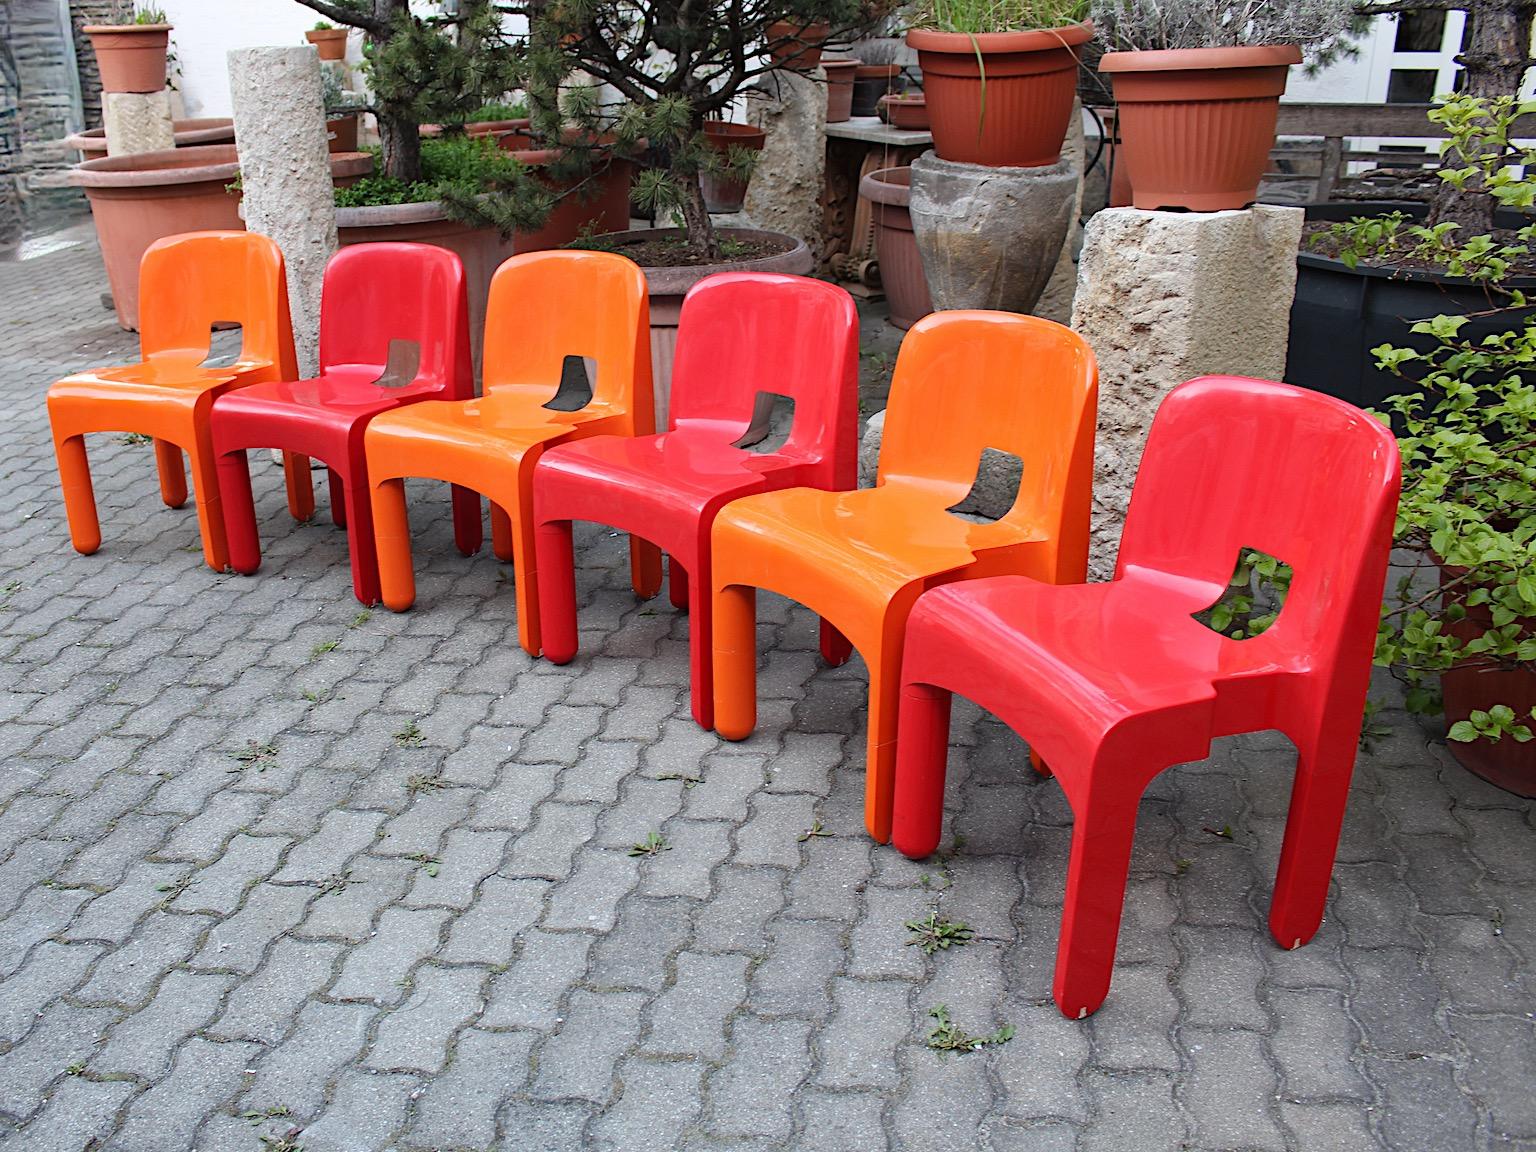 Six chaises vintage ou chaises de salle à manger pop art en plastique rouge et orange, modèle Universale conçu par Joe Colombo 
1965 - 1967 et exécuté par Kartell, Milan.
Ces couleurs joyeuses comme le rouge cerise et l'orange audacieux mettent en